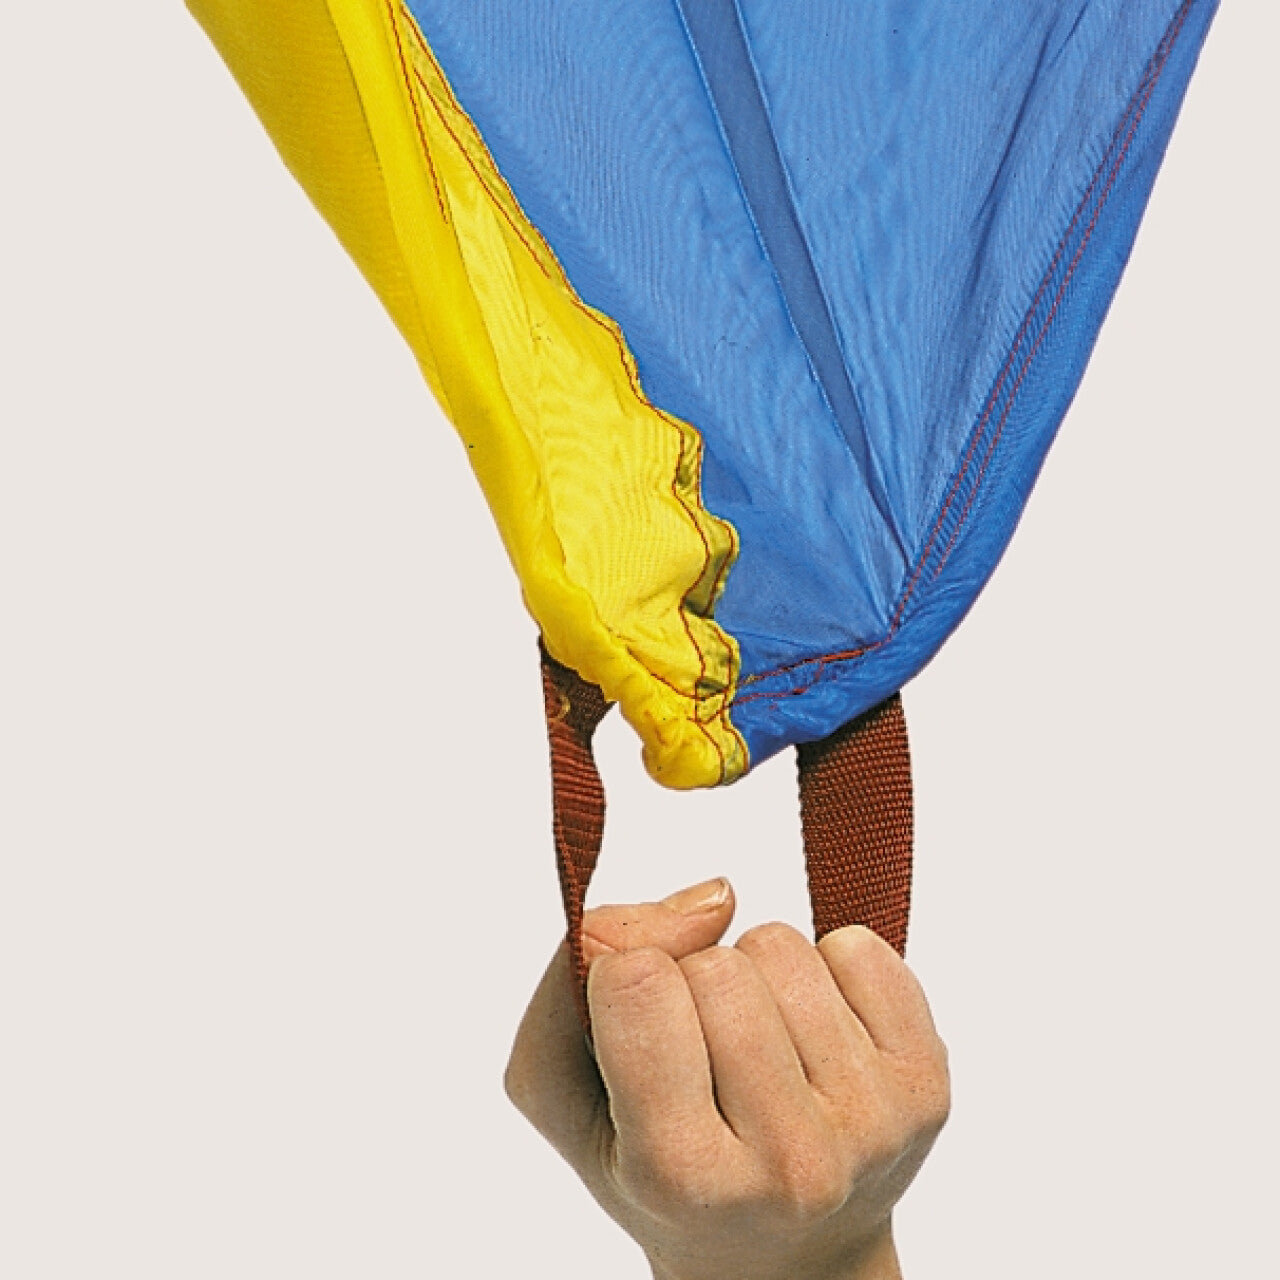 Giant Parachute Toy